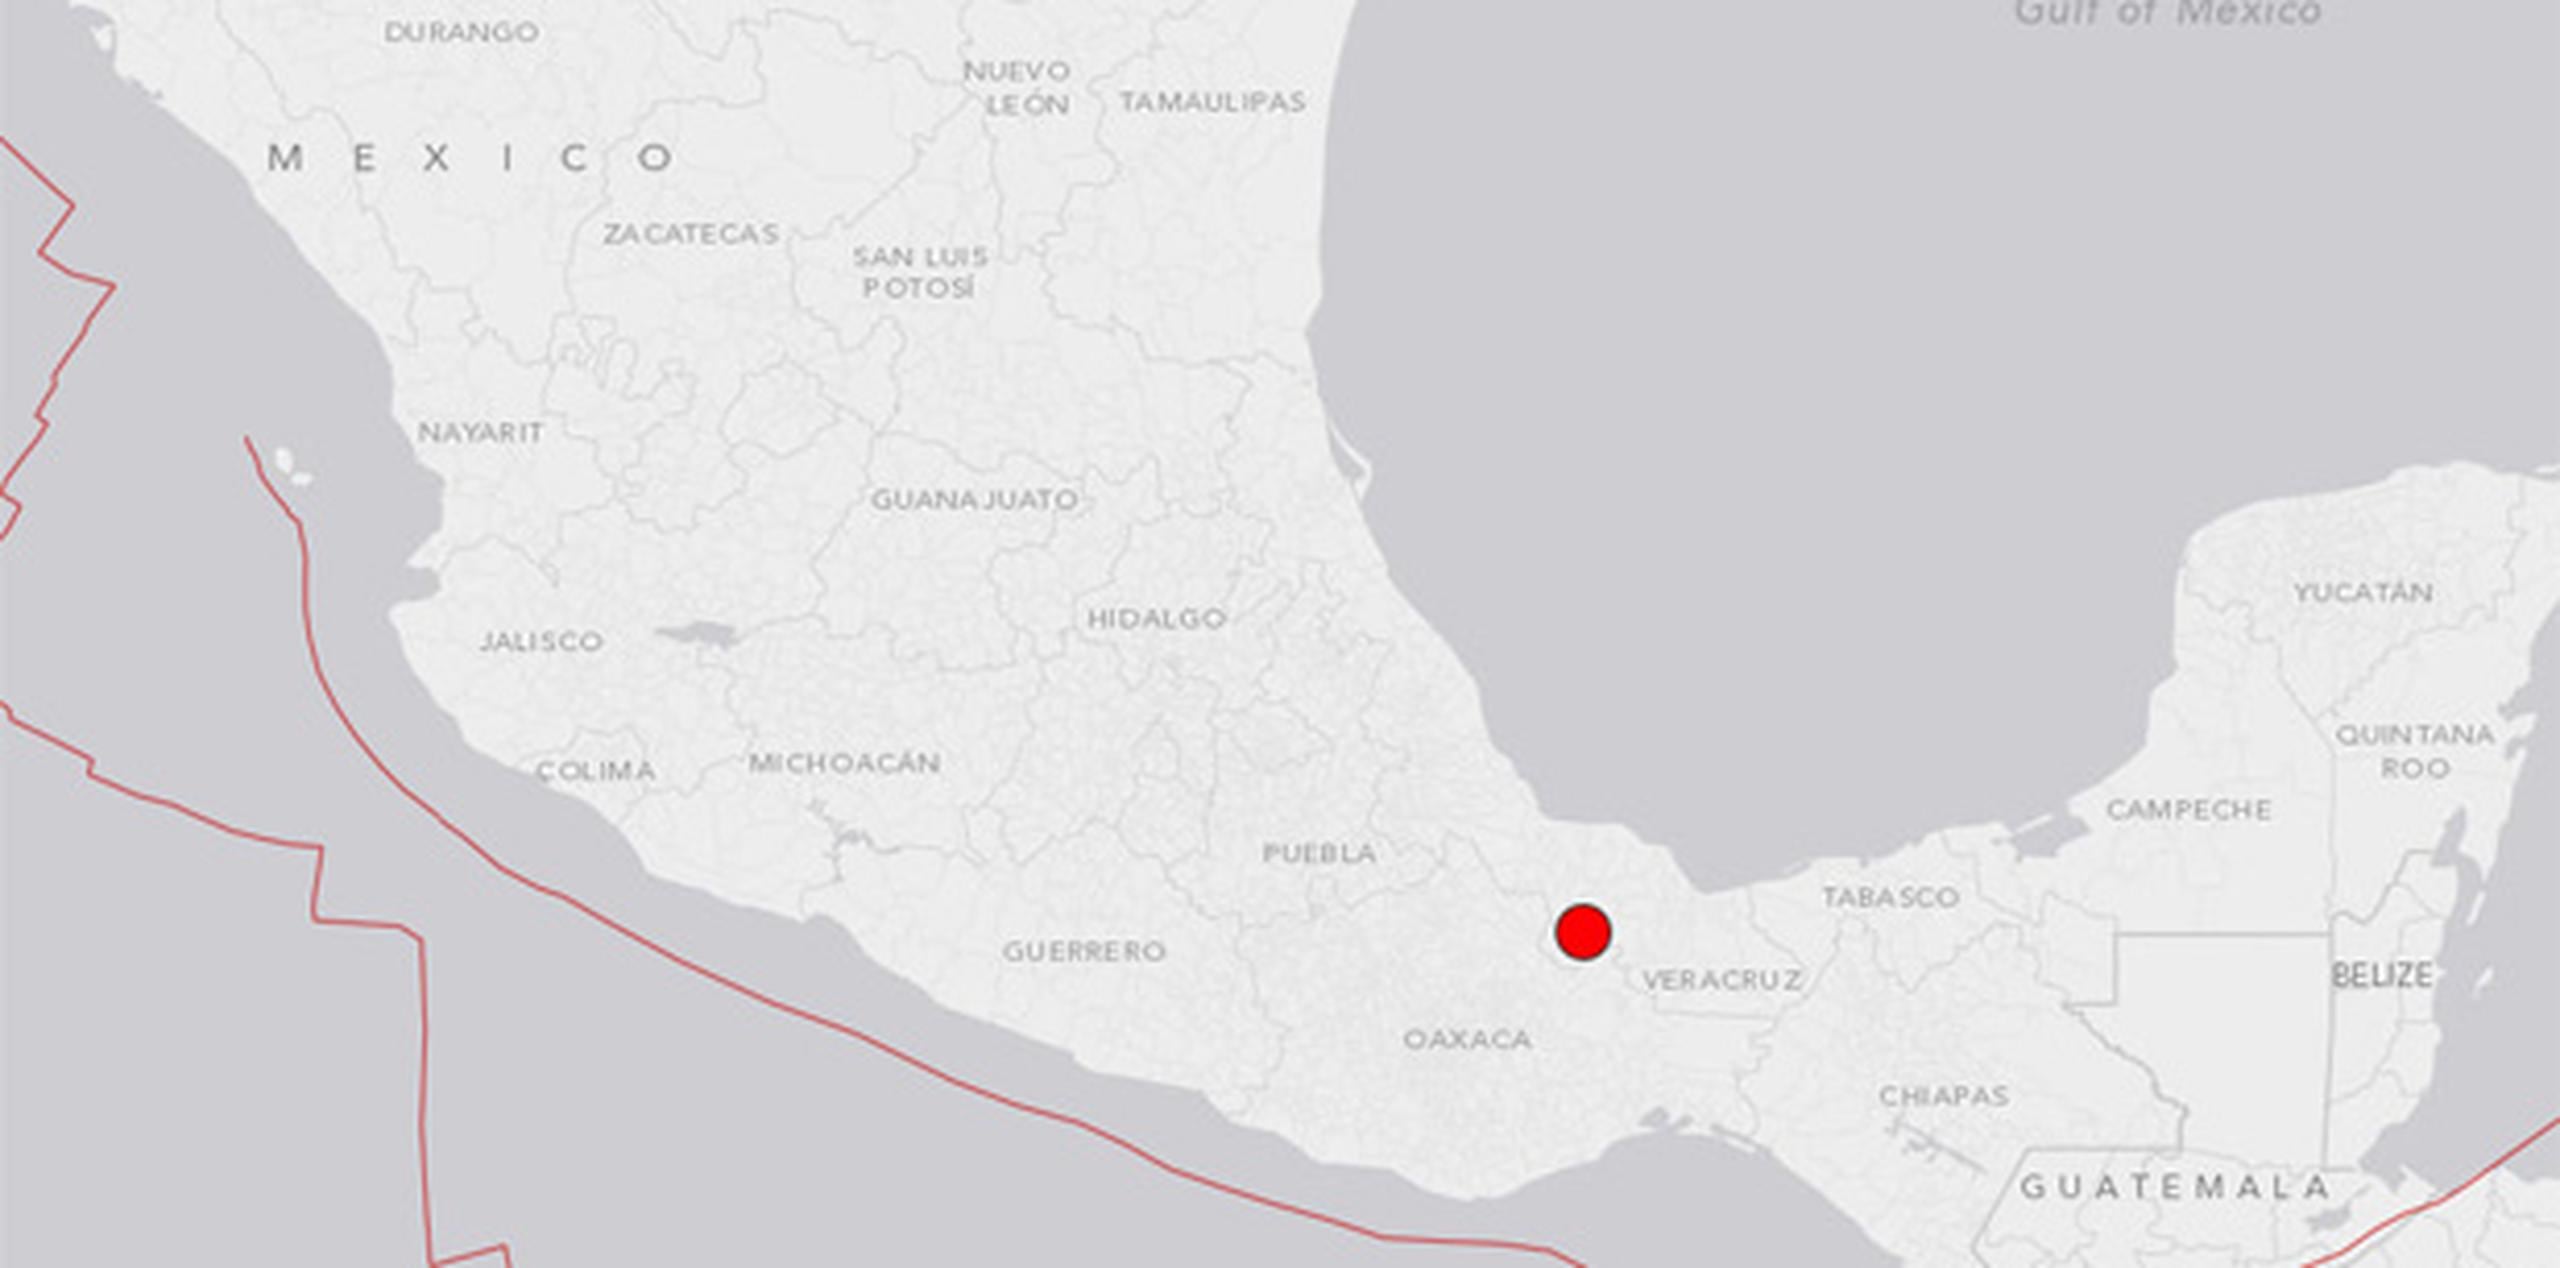 El epicentro se localizó en el sur del oriental estado de Veracruz. (USGS)